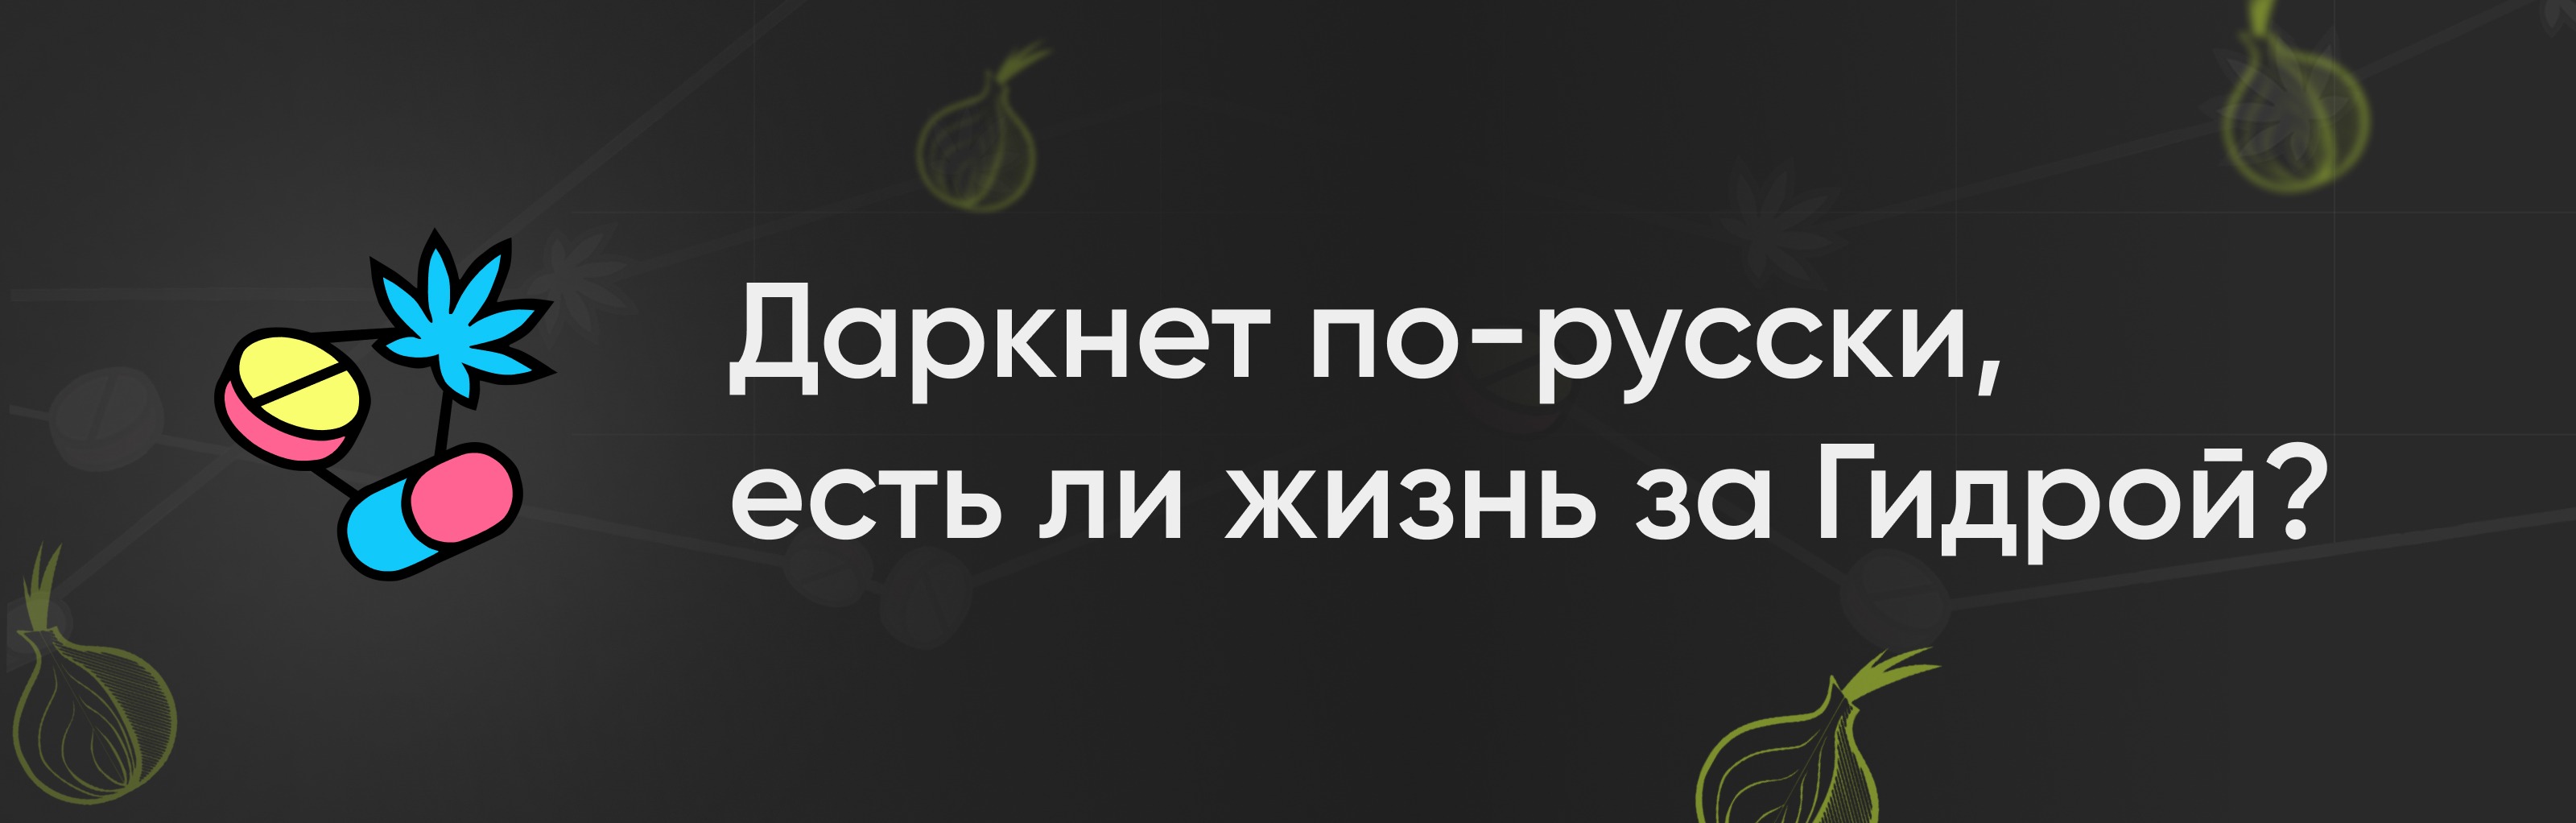 скачать blacksprut на русском бесплатно для iphone даркнет